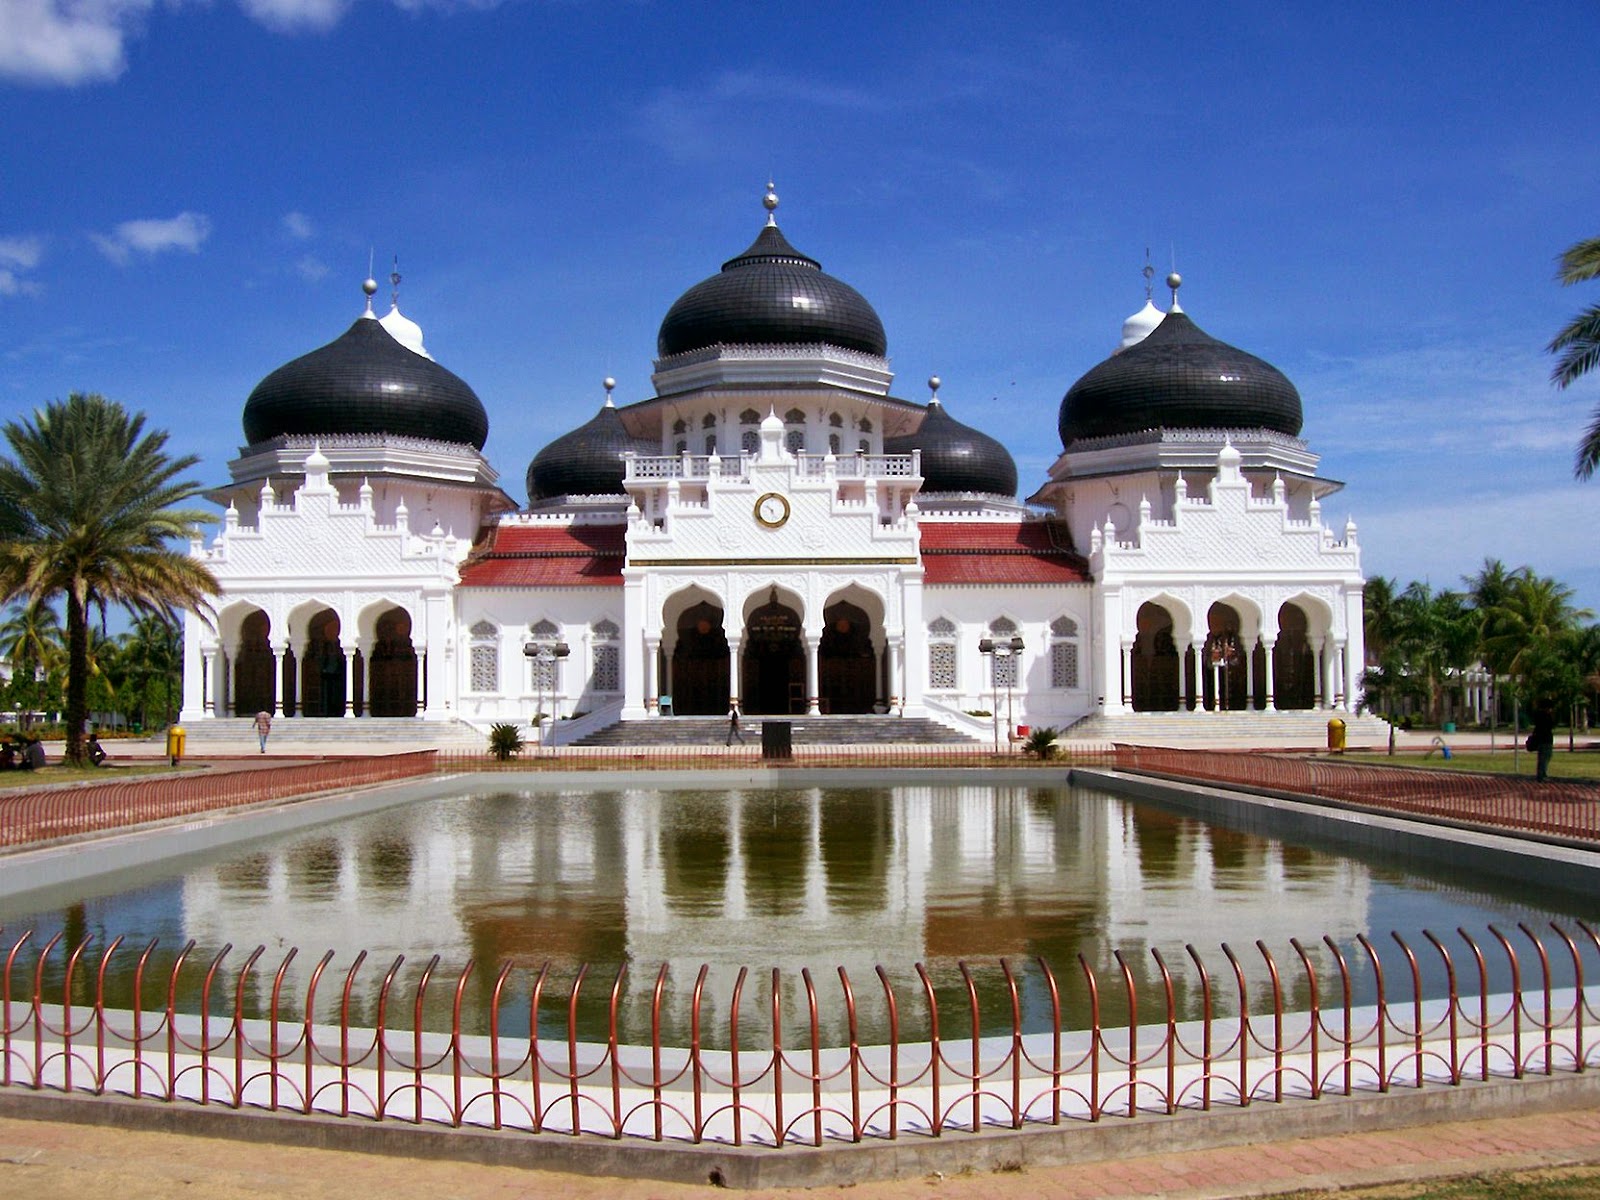 Peninggalan Kerajaan Islam Di Indonesia Beserta Gambarnya | KAPSAINS